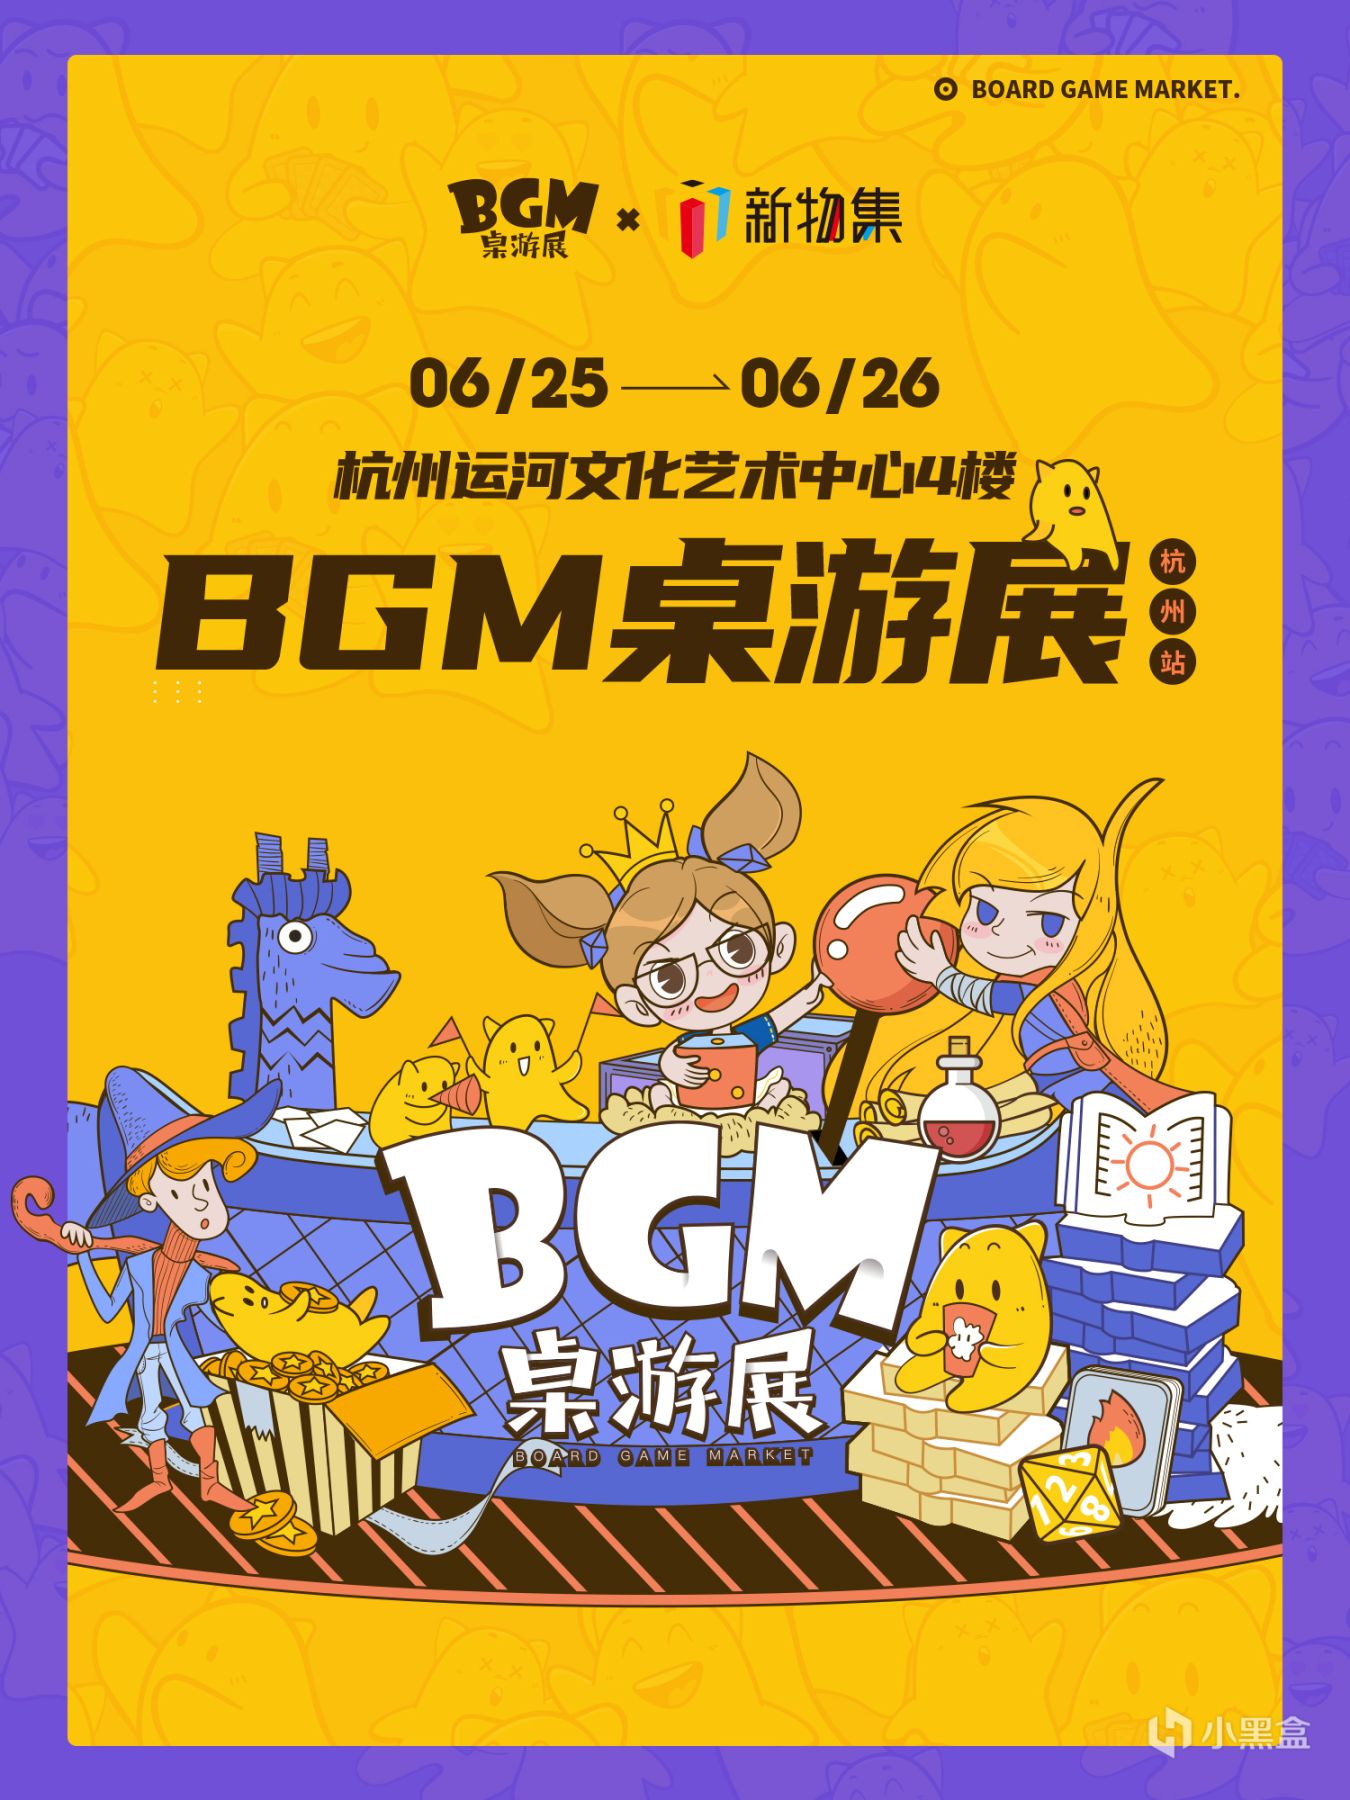 【桌游综合】BGM桌游展-杭州站 即将开票！数量有限，快来抢票吧！-第0张